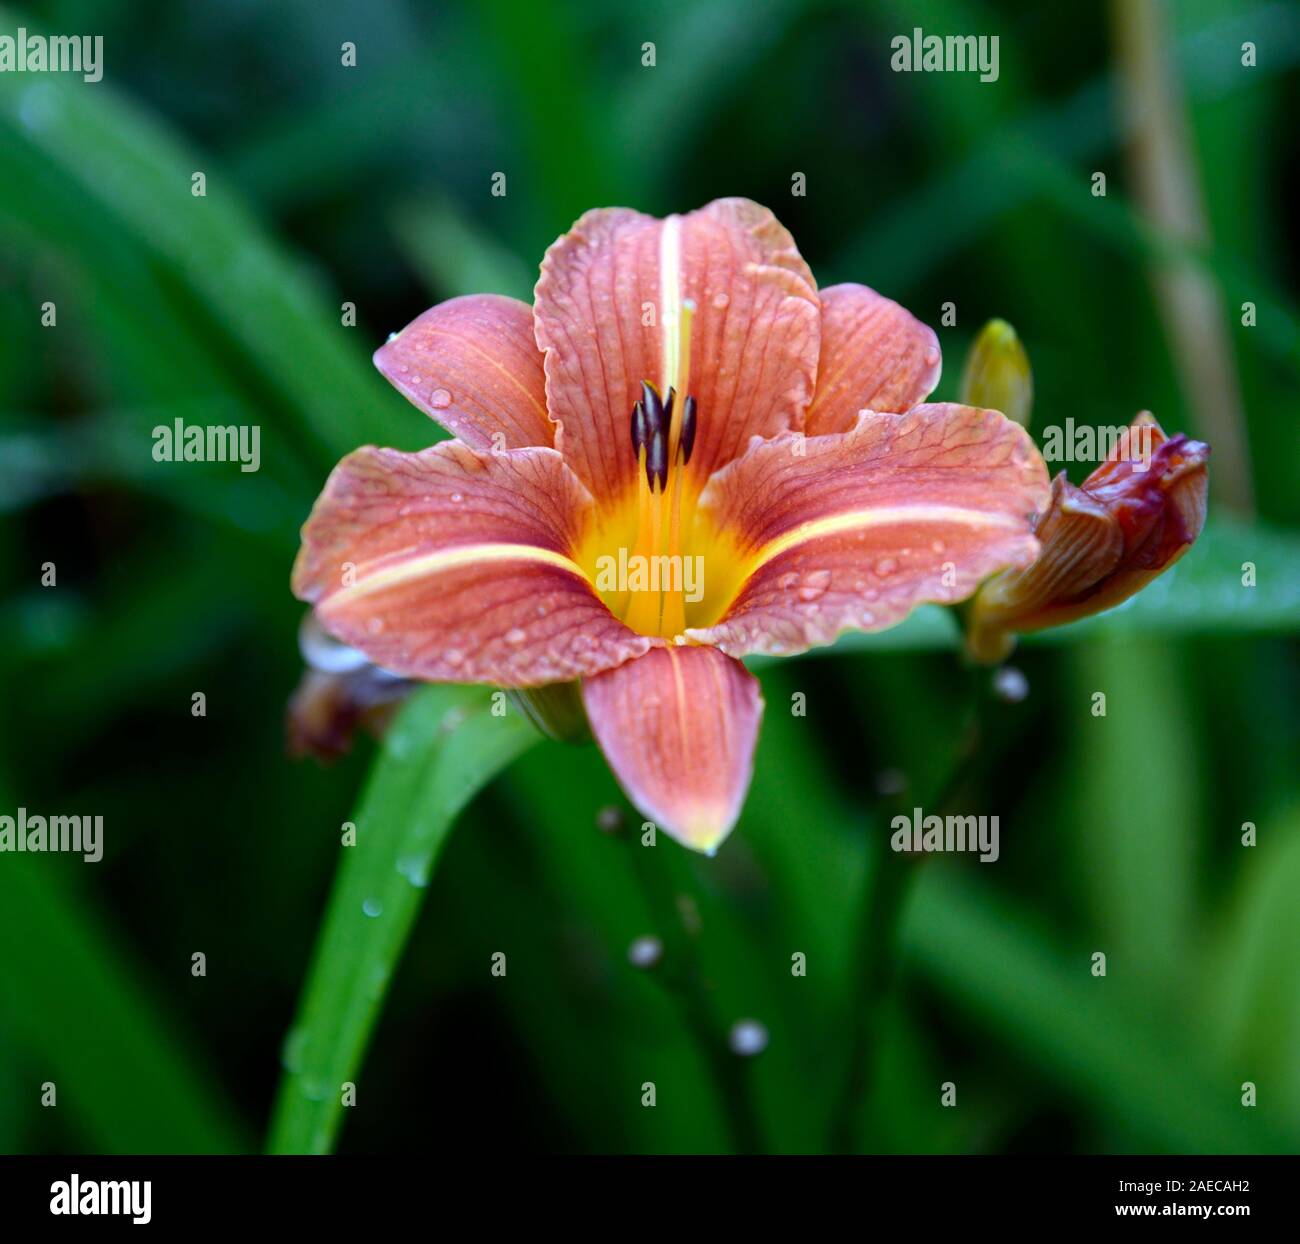 Hemerocallis,arancio ruggine,giglio di giorno,daylily,daylilies,fiore,fiori,fioritura,blooming,RM Floral Foto Stock